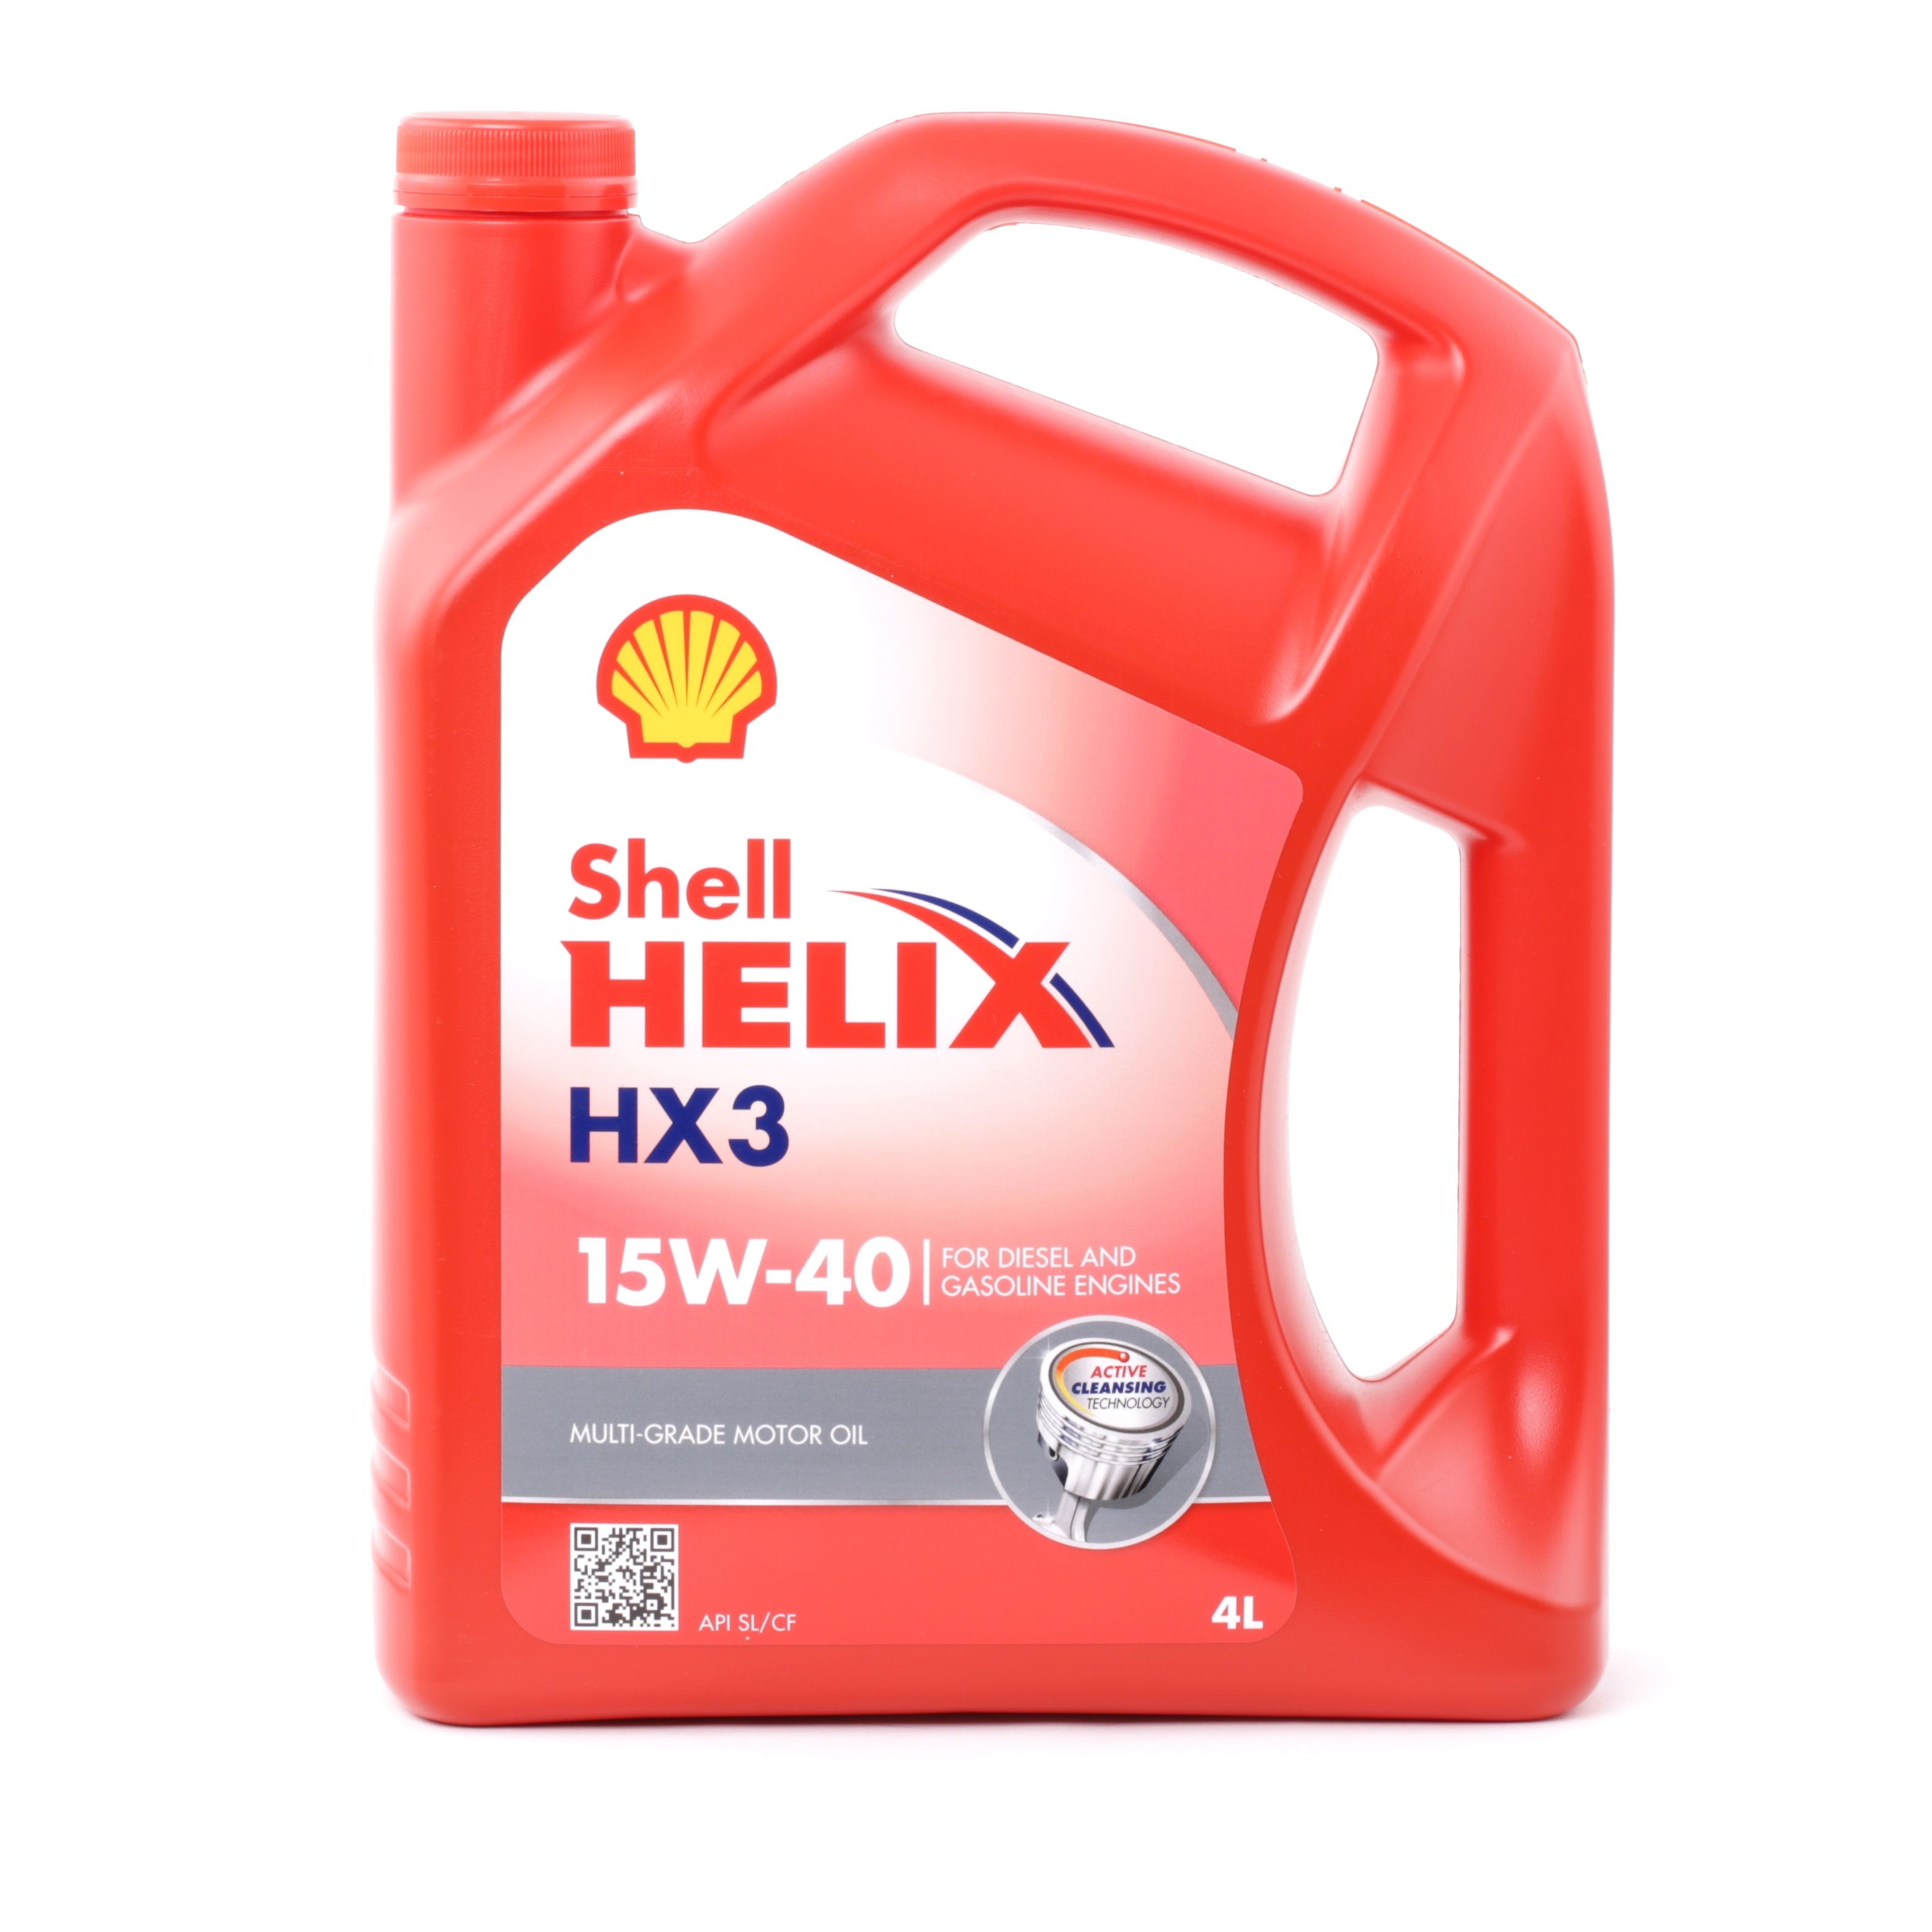 P000297 SHELL Helix, HX3 15W-40, 4l, Mineralöl Motoröl 550039926 günstig kaufen